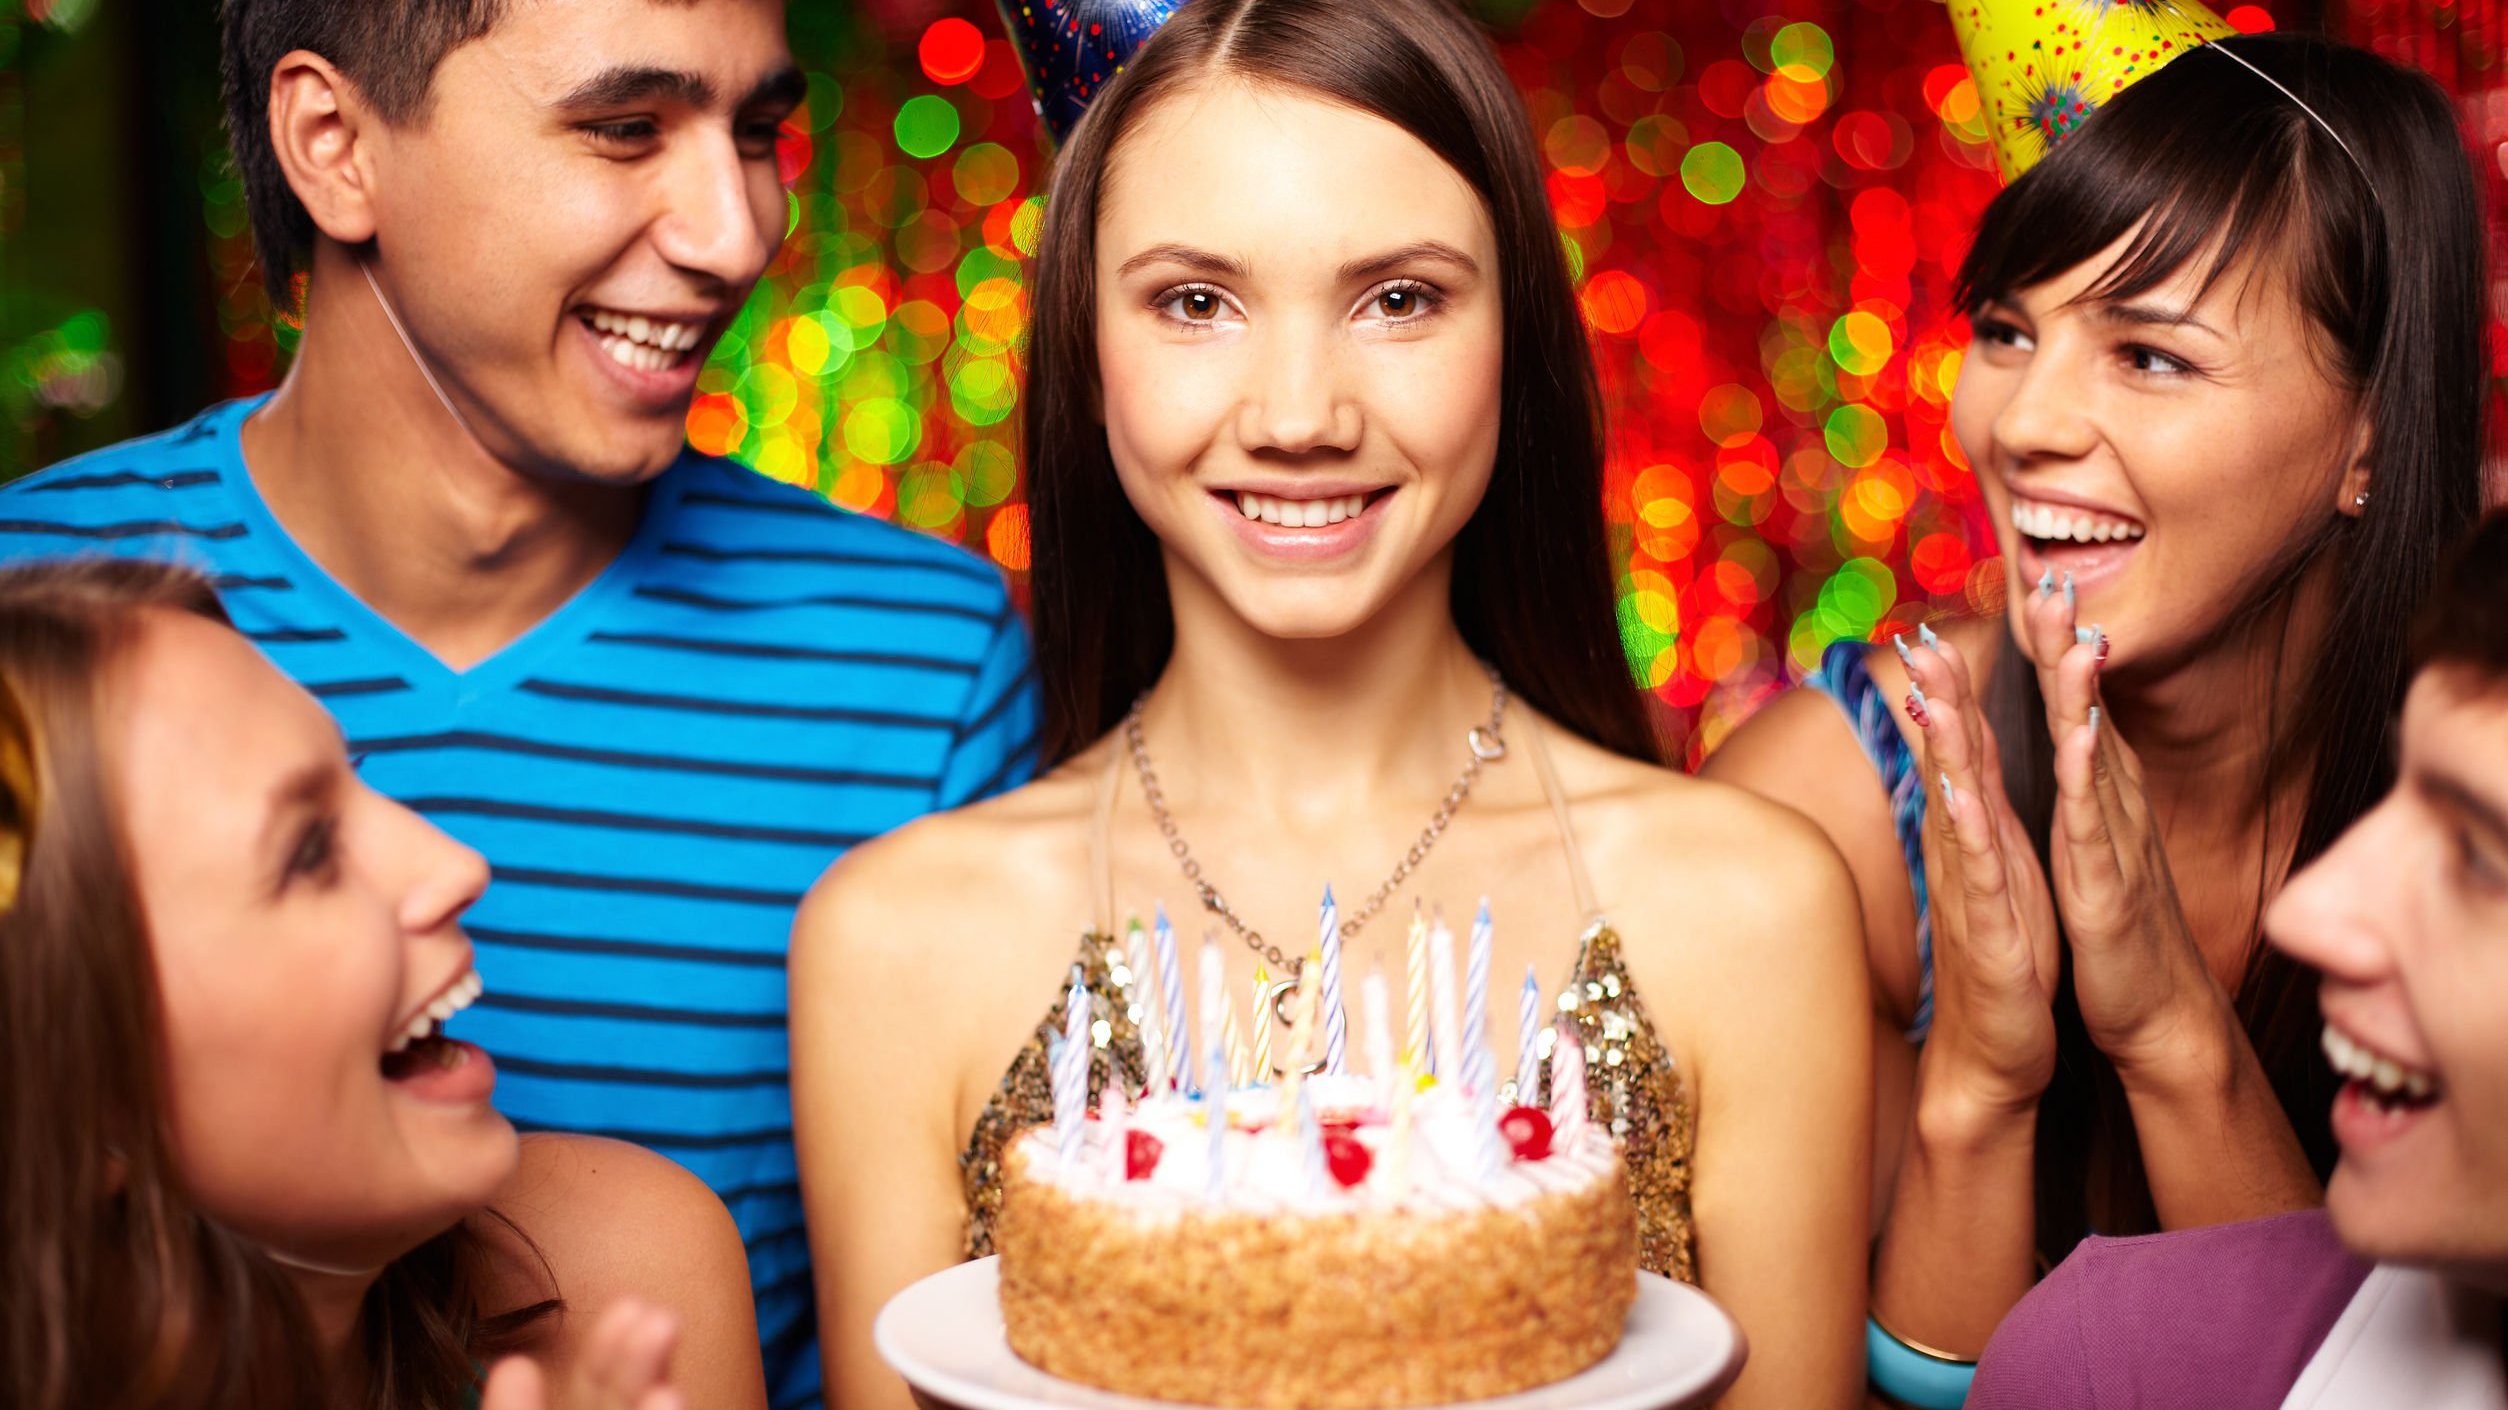 Pessoas comemorando aniversário e mulher sorrindo, segurando bolo.